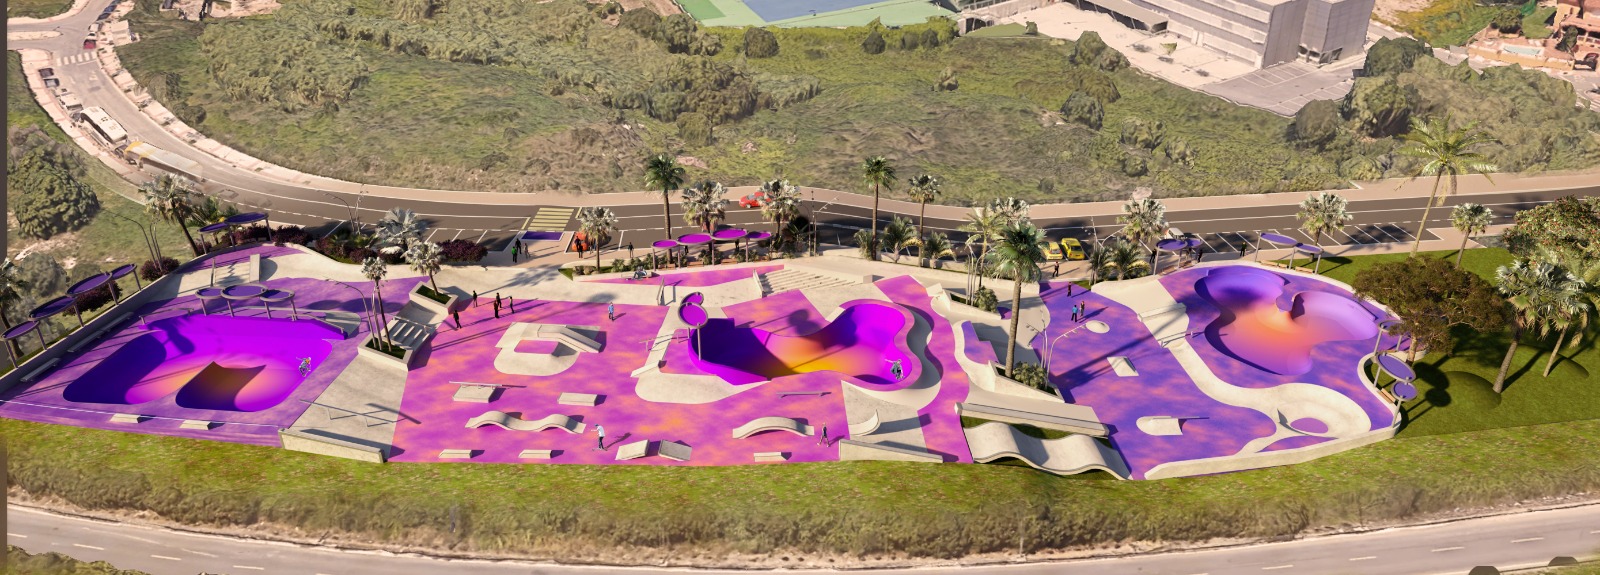 El Ayuntamiento licita un nuevo Skate Park en la zona de Trapiche Norte, con más de 5.000 metros cuadrados de superficie